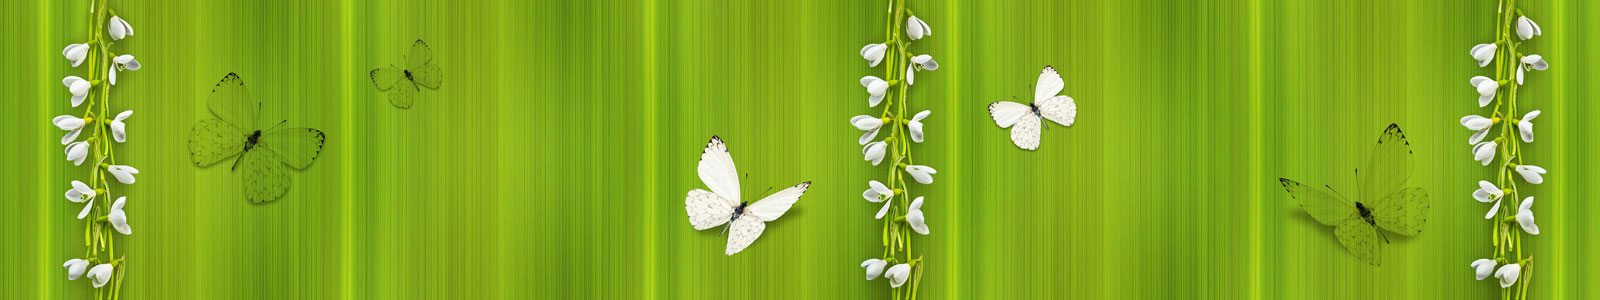 №4919 - Белые бабочки и подснежники на зеленом фоне